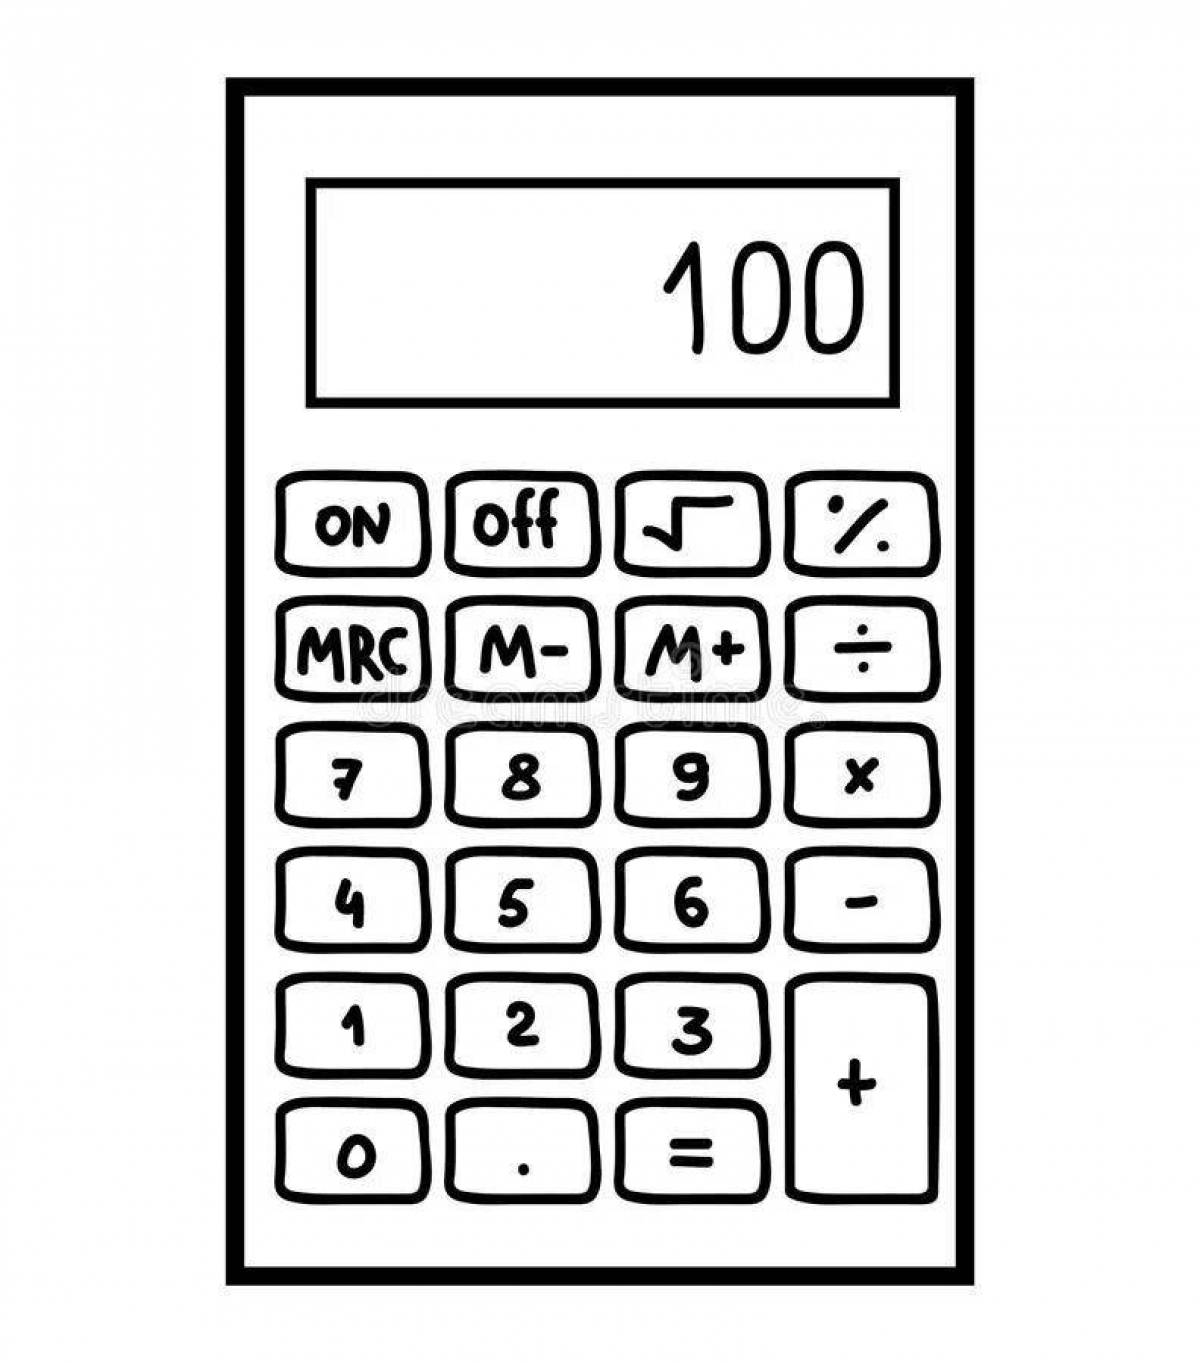 Табло калькулятора в картинках